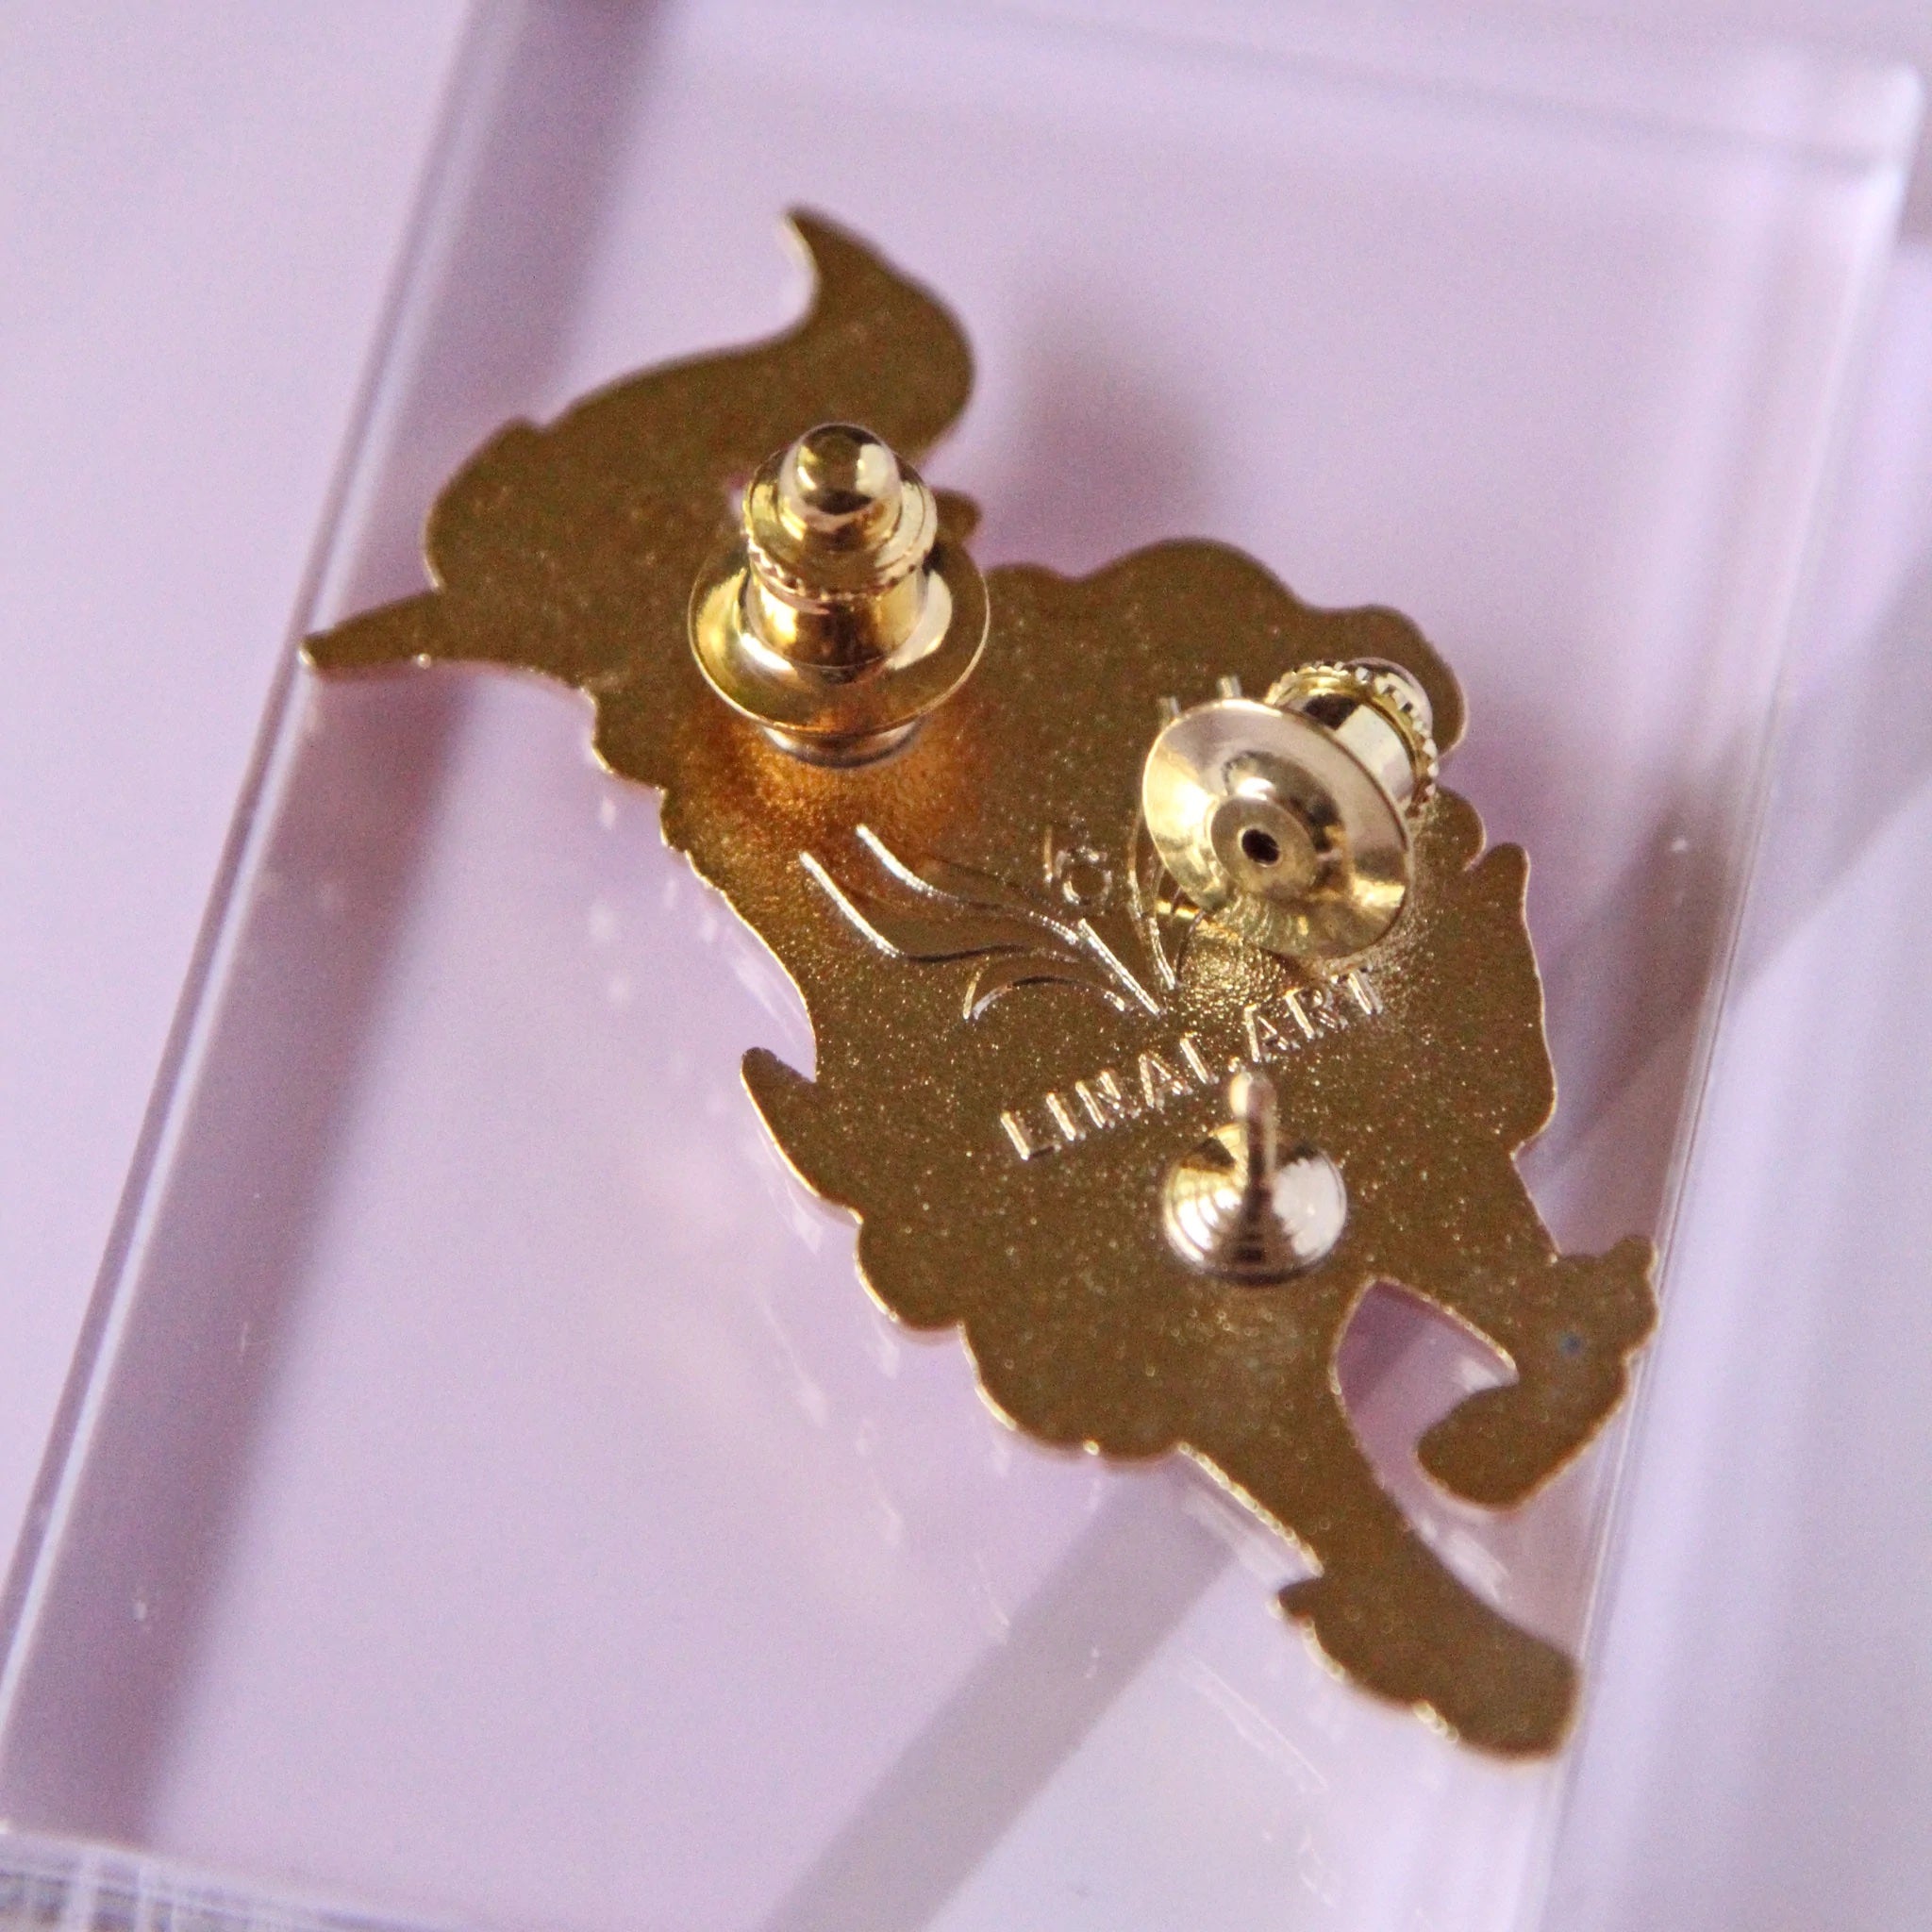 Enamel pin locking backs attached to an enamel pin